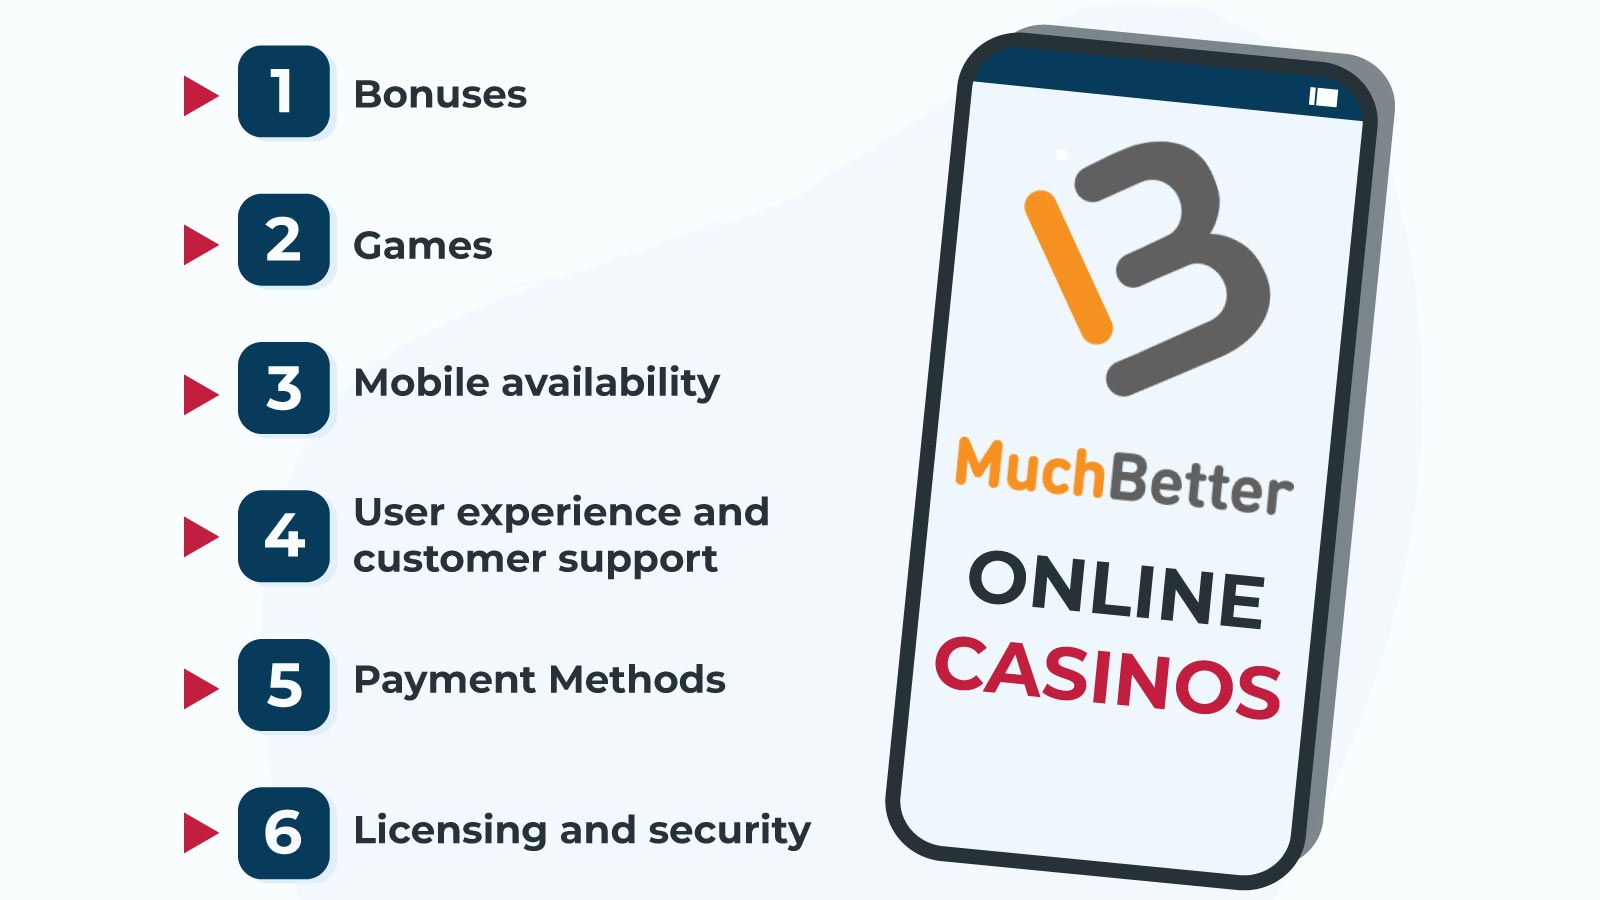 How to pick MuchBetter online casinos